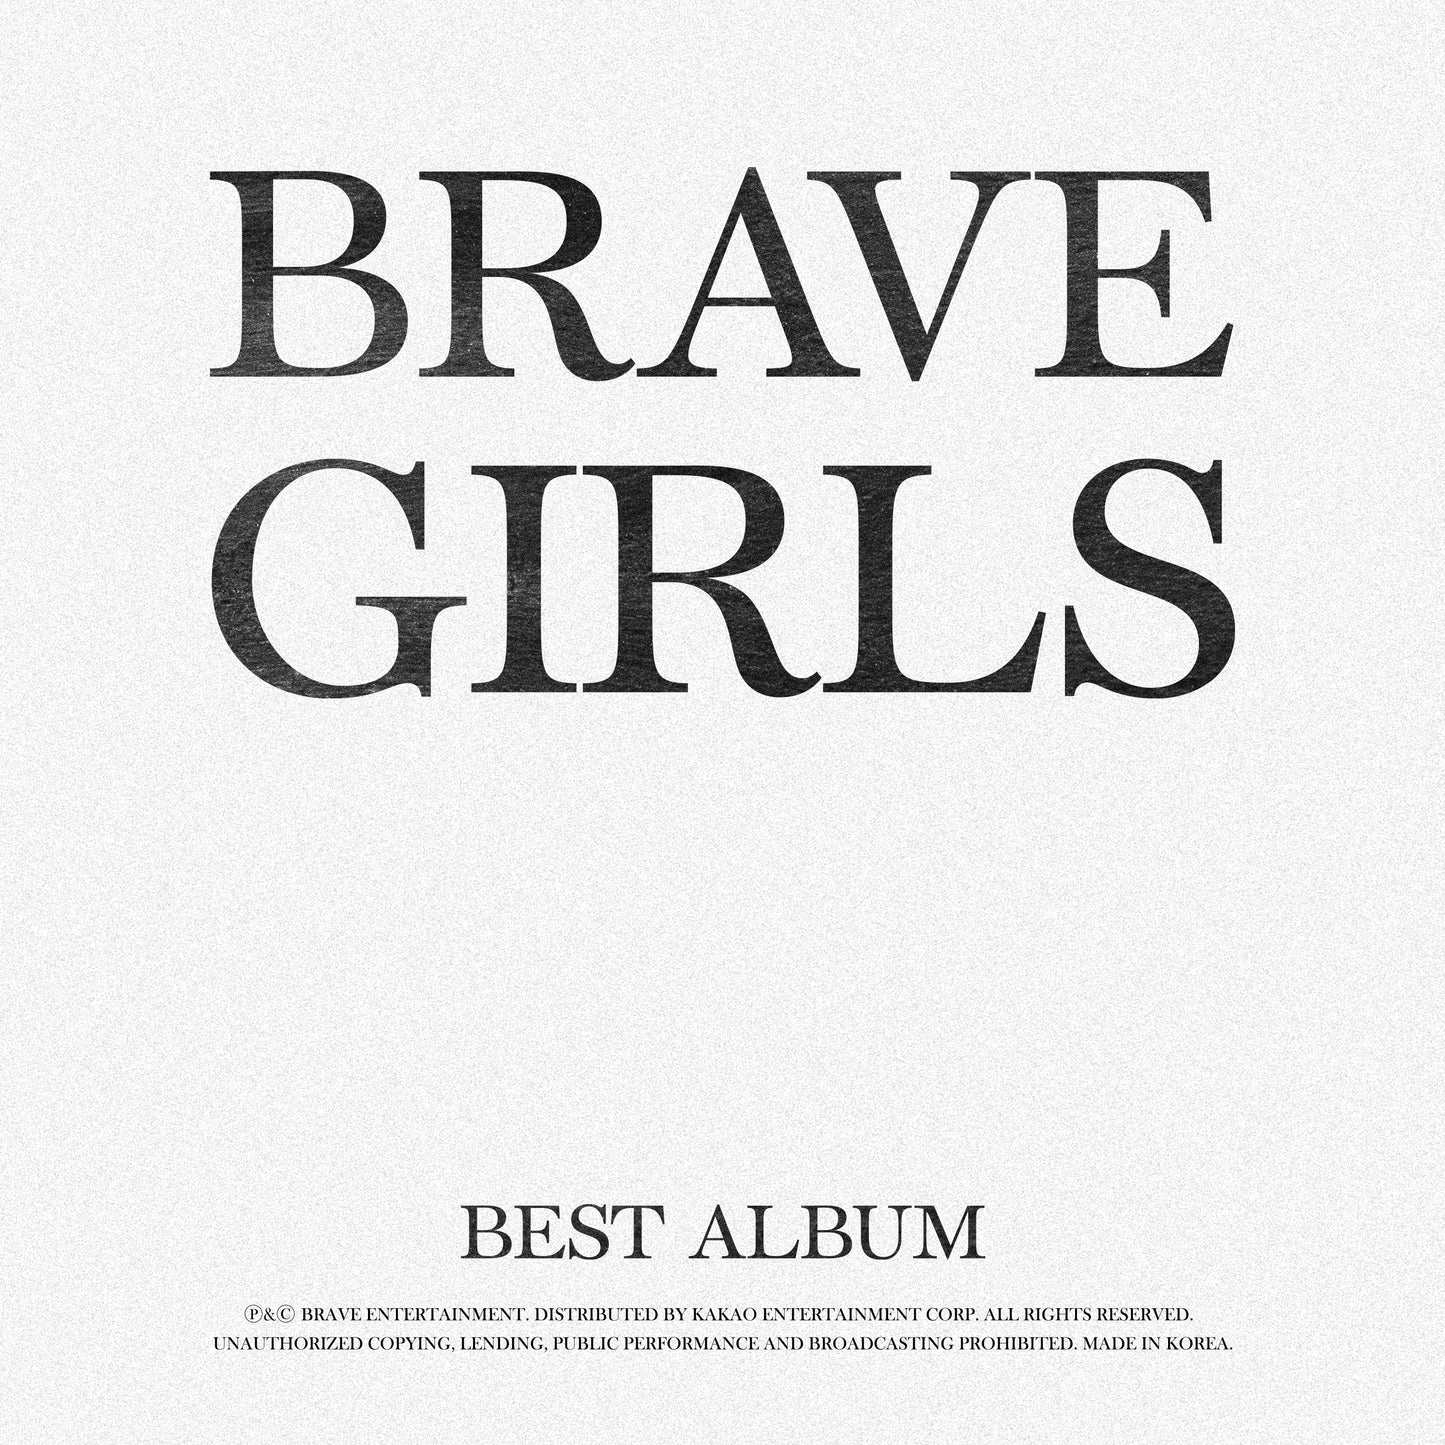 BRAVE GIRLS ALBUM 'BEST ALBUM' COVER